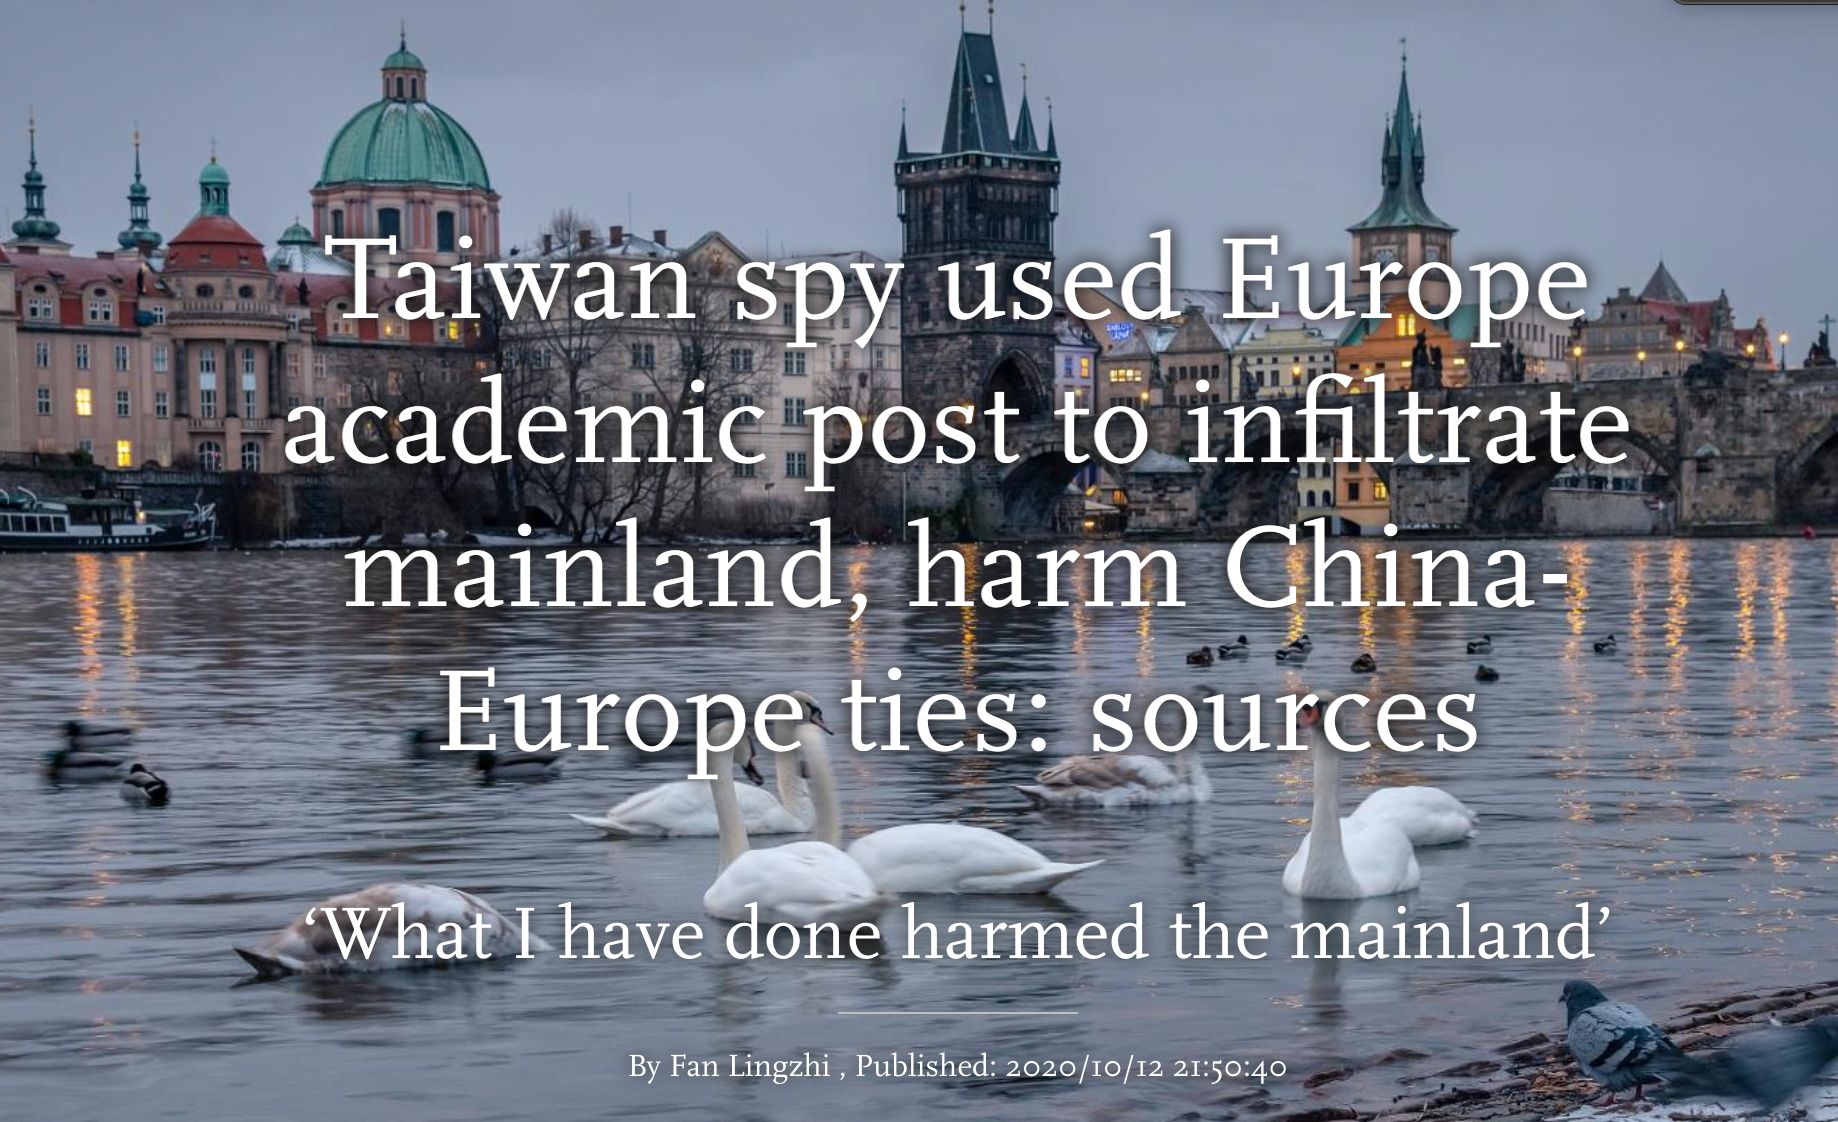 "Co jsem udělal, poškodilo Čínu," cituje propagandistický deník komunistické strany údajné přiznání "špiona" z Prahy.